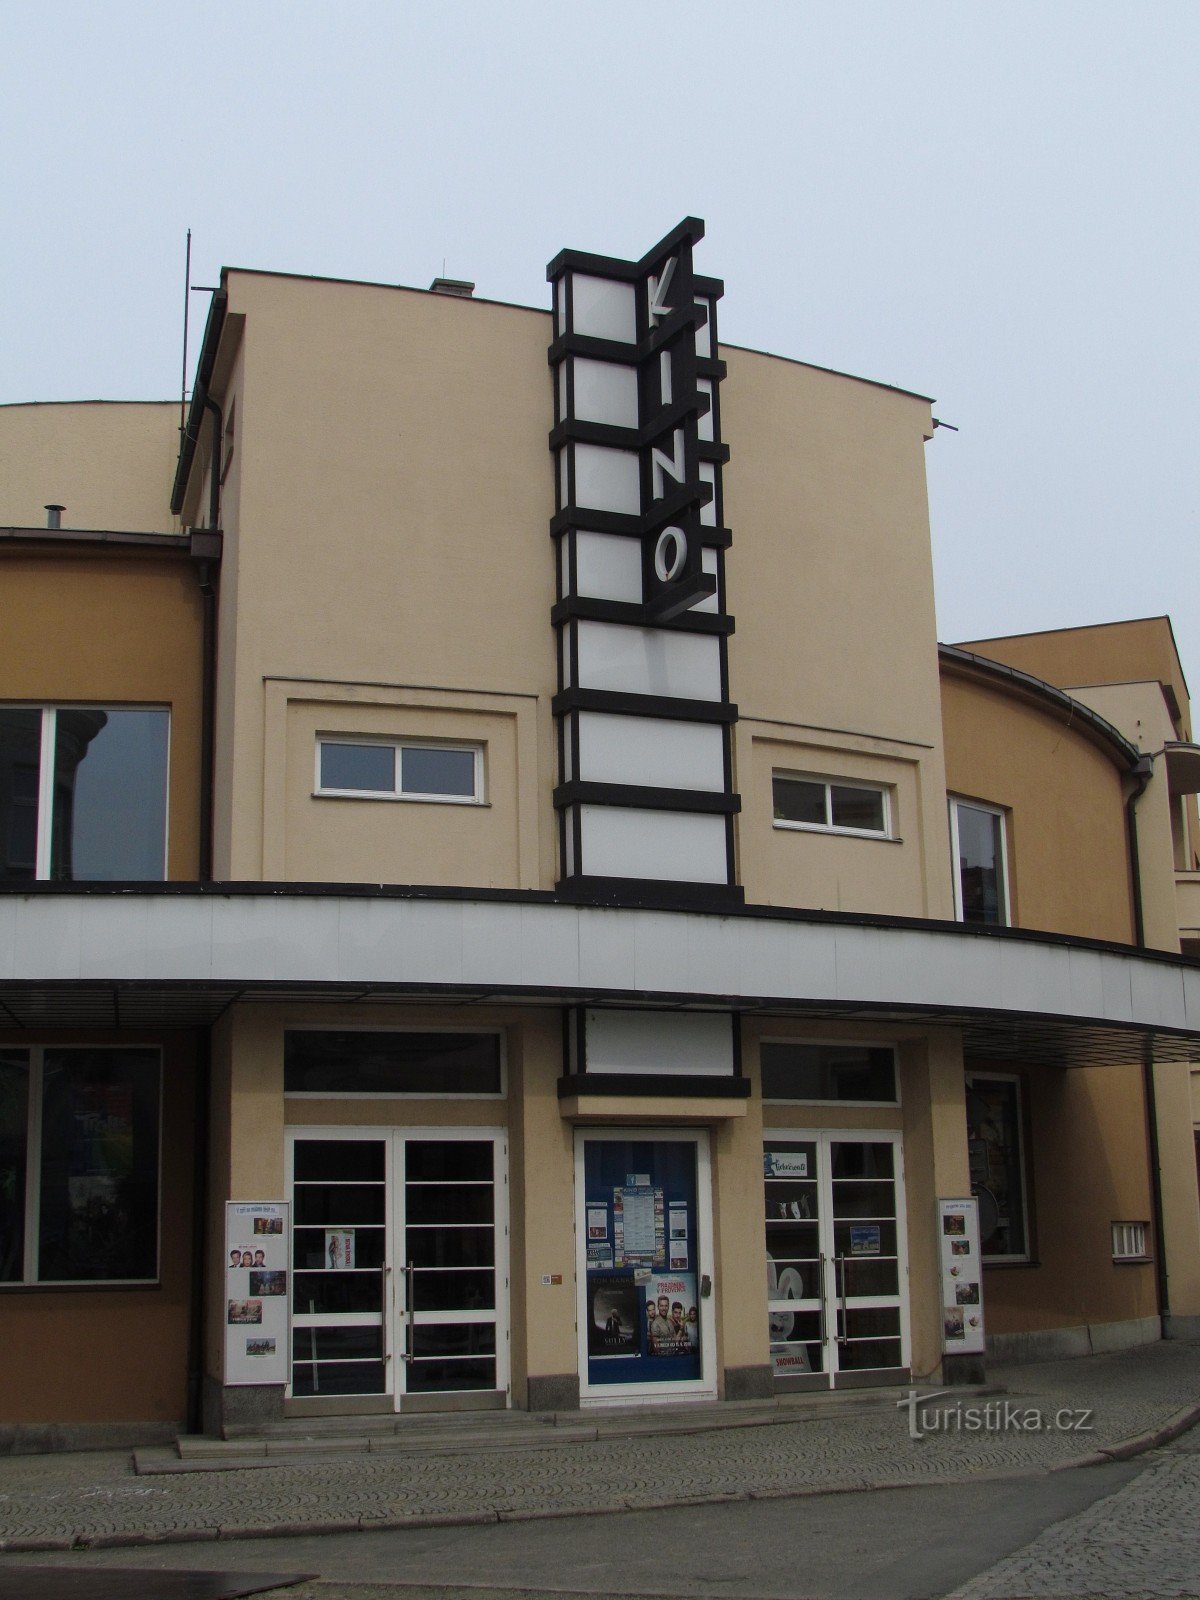 Новый Йичин - городской кинотеатр